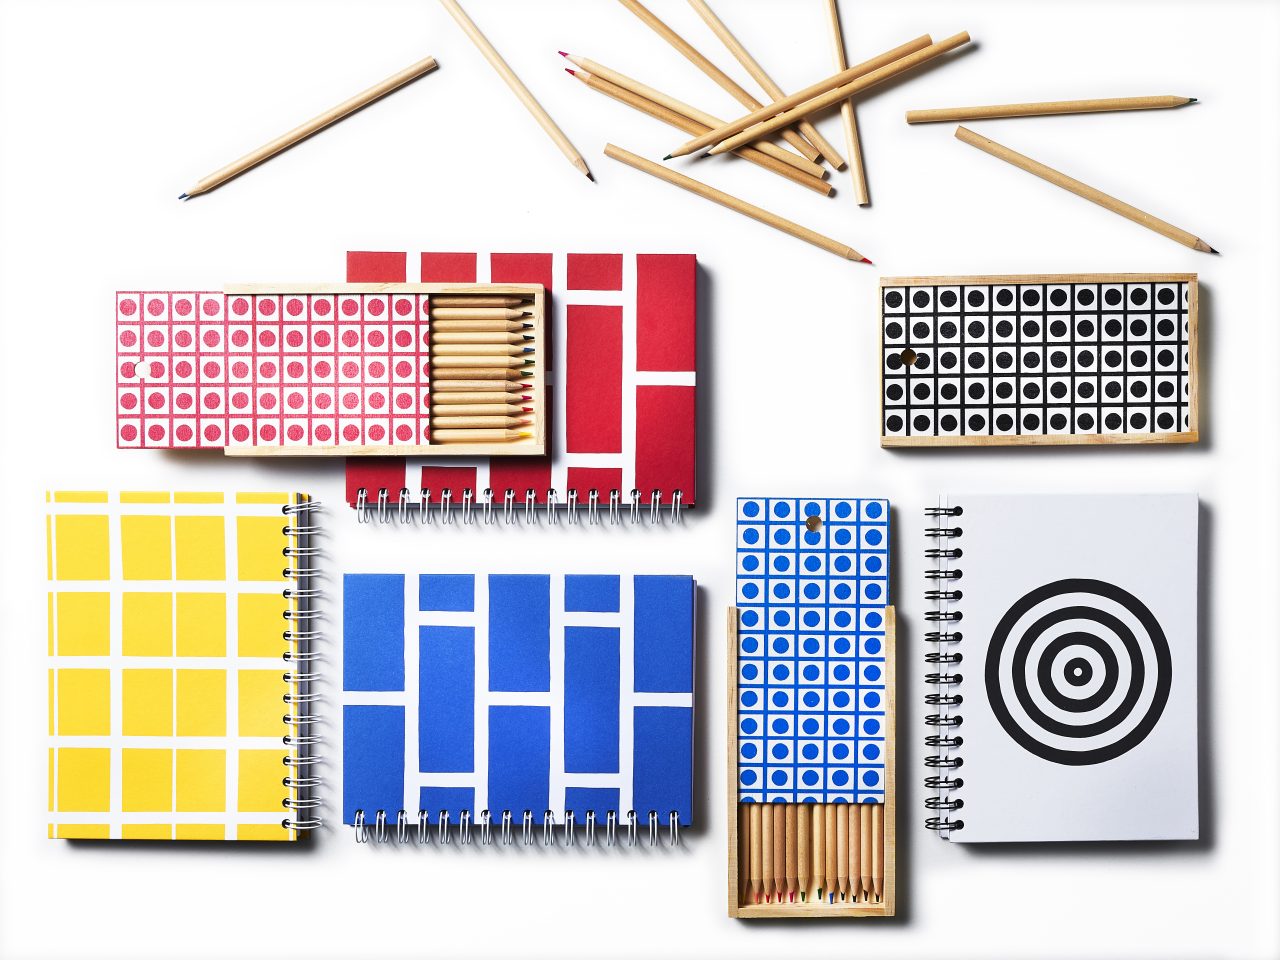 Anteckningsböcker, pennor och pennfack i trä med grafiska mönster i blåvitt, gulvitt, rödvitt och svartvitt.